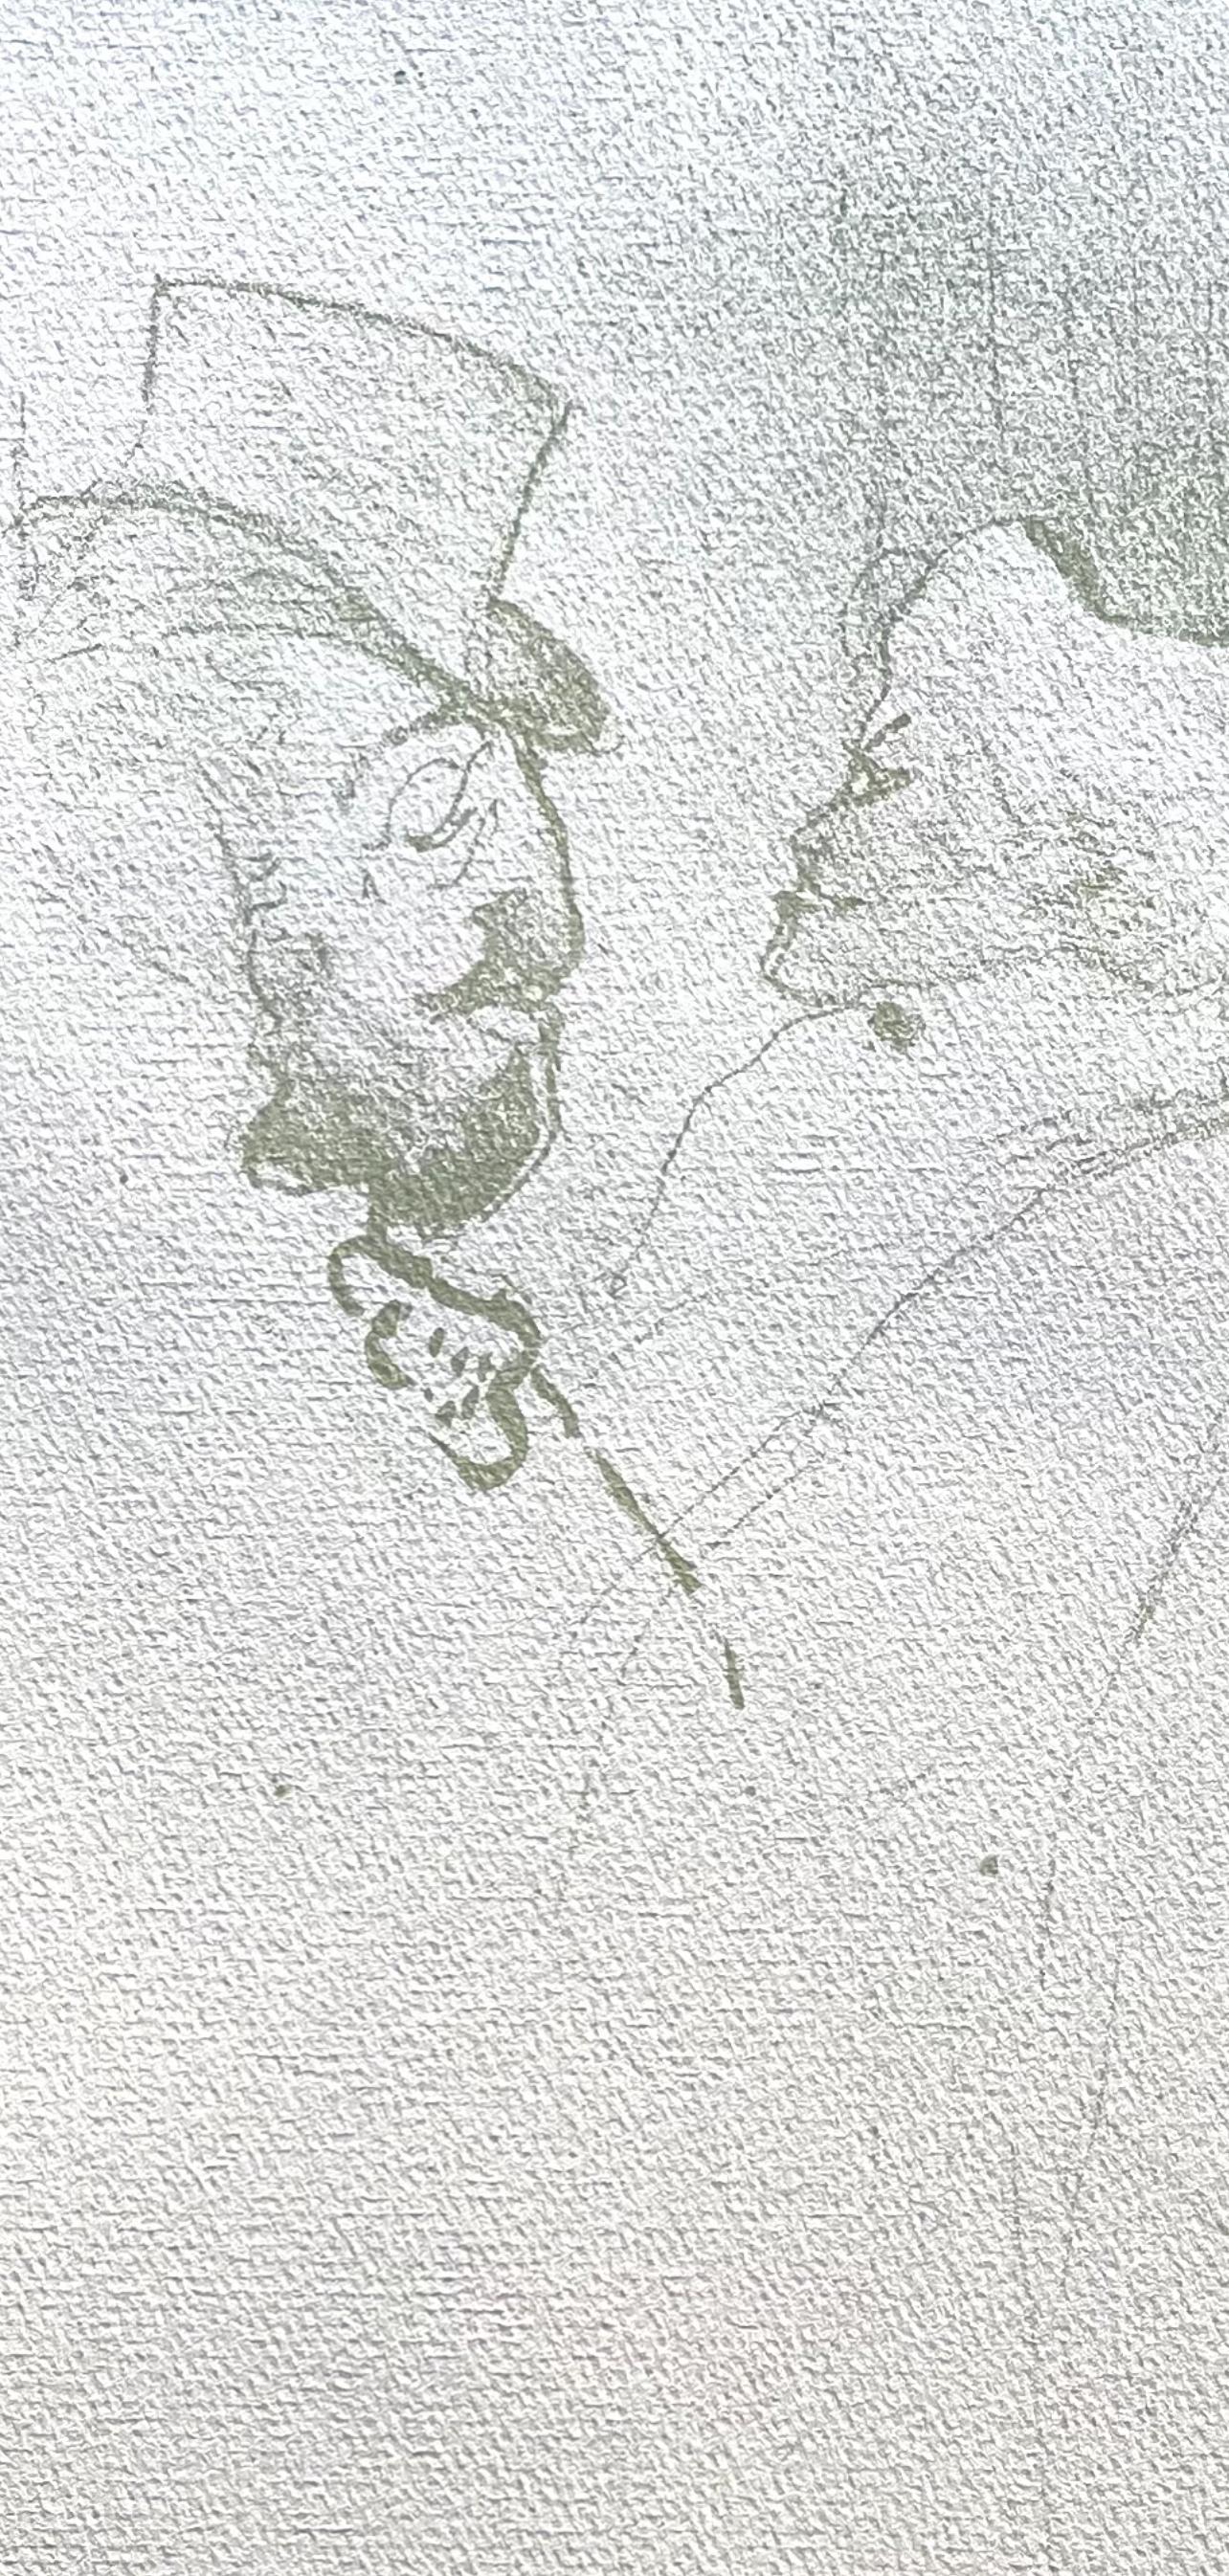 Toulouse-Lautrec, Pourquoi pas, TLautrec, Philadelphia Museum of Art (nach) – Print von Henri de Toulouse-Lautrec